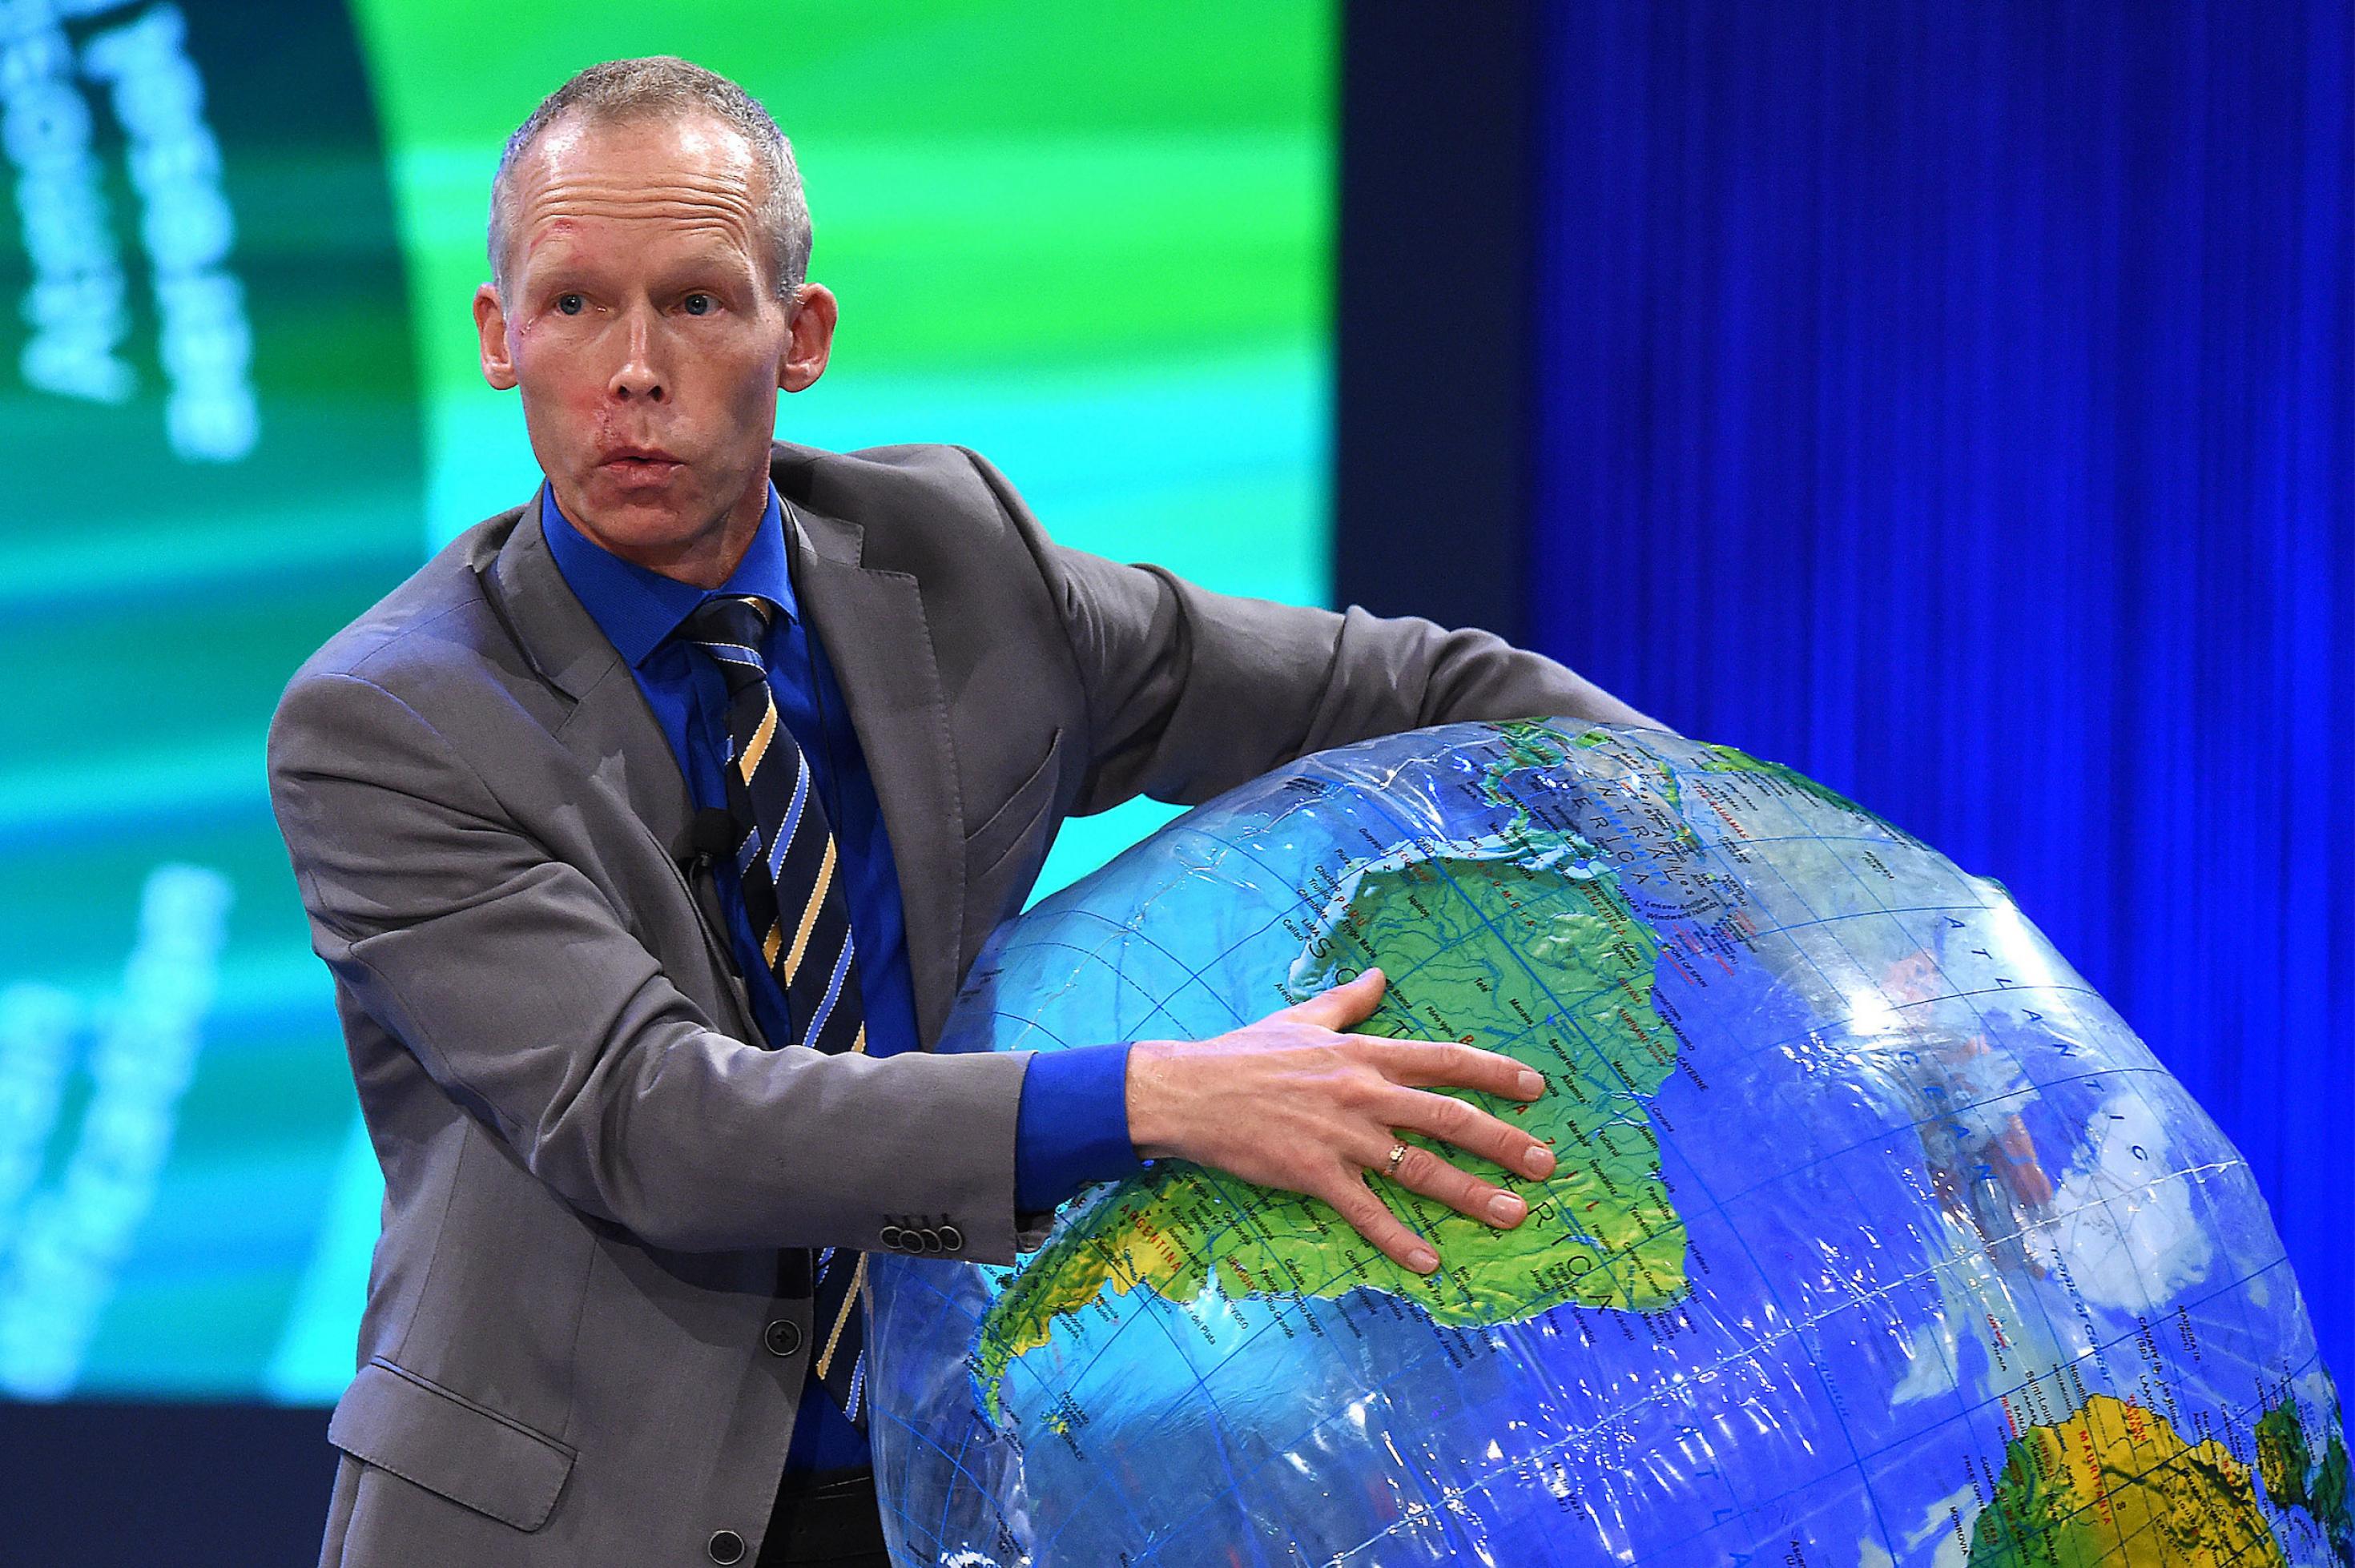 Der schwedische Resilienzforscher und Preisträger Prof. Dr. Johan Rockström entwickelte das Konzept der „planetaren Grenzen“, das er anlässlich der Verleihung des Deutschen Umweltpreises 2015 anhand eines aufblasbaren Globus erklärt. Foto: Revierfoto